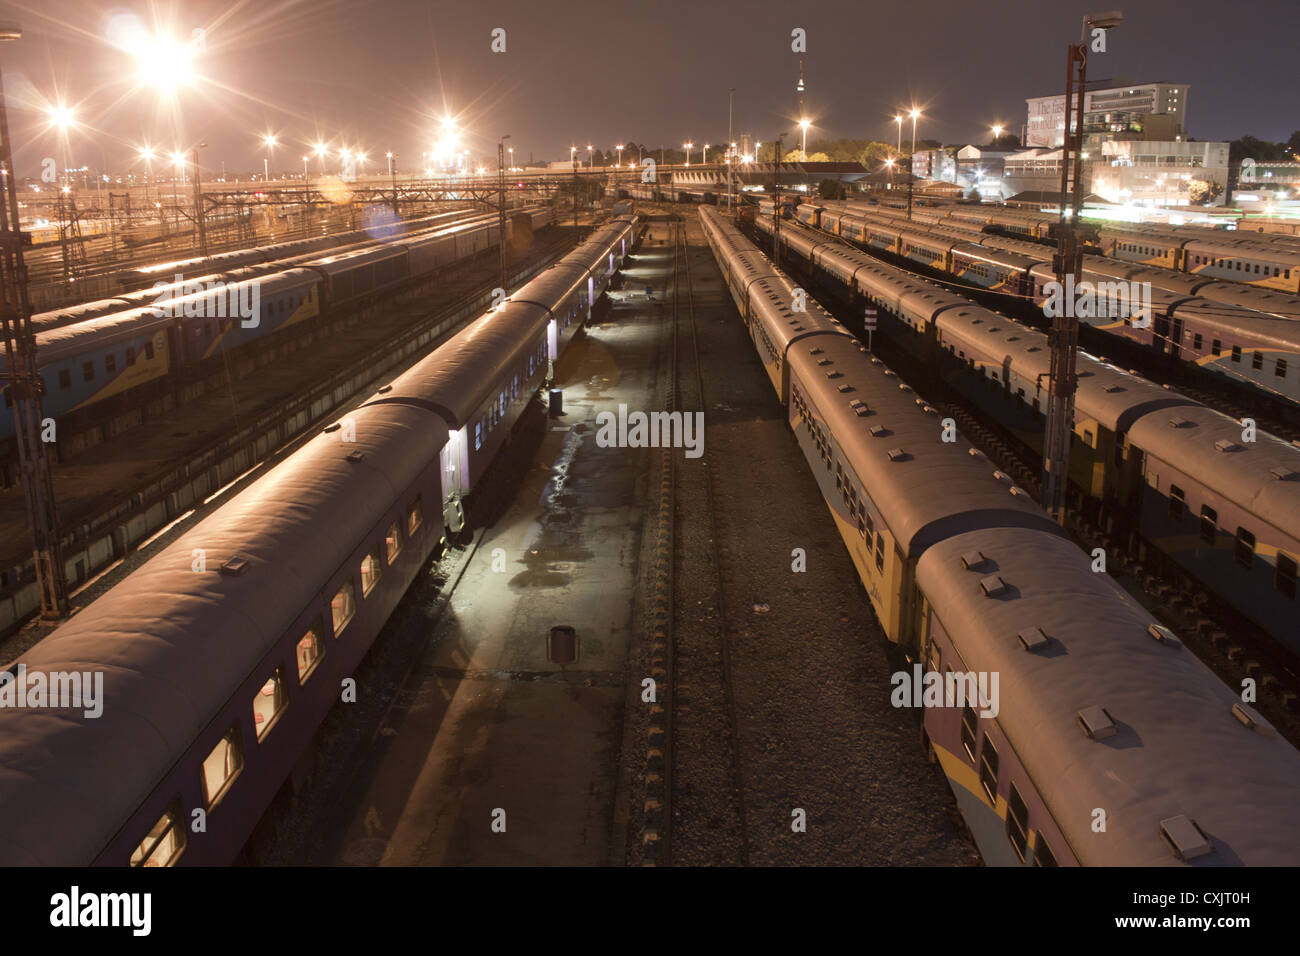 Les Trains de nuit paysage urbain parqué dans Park Station, à Johannesburg, Afrique du Sud. Banque D'Images